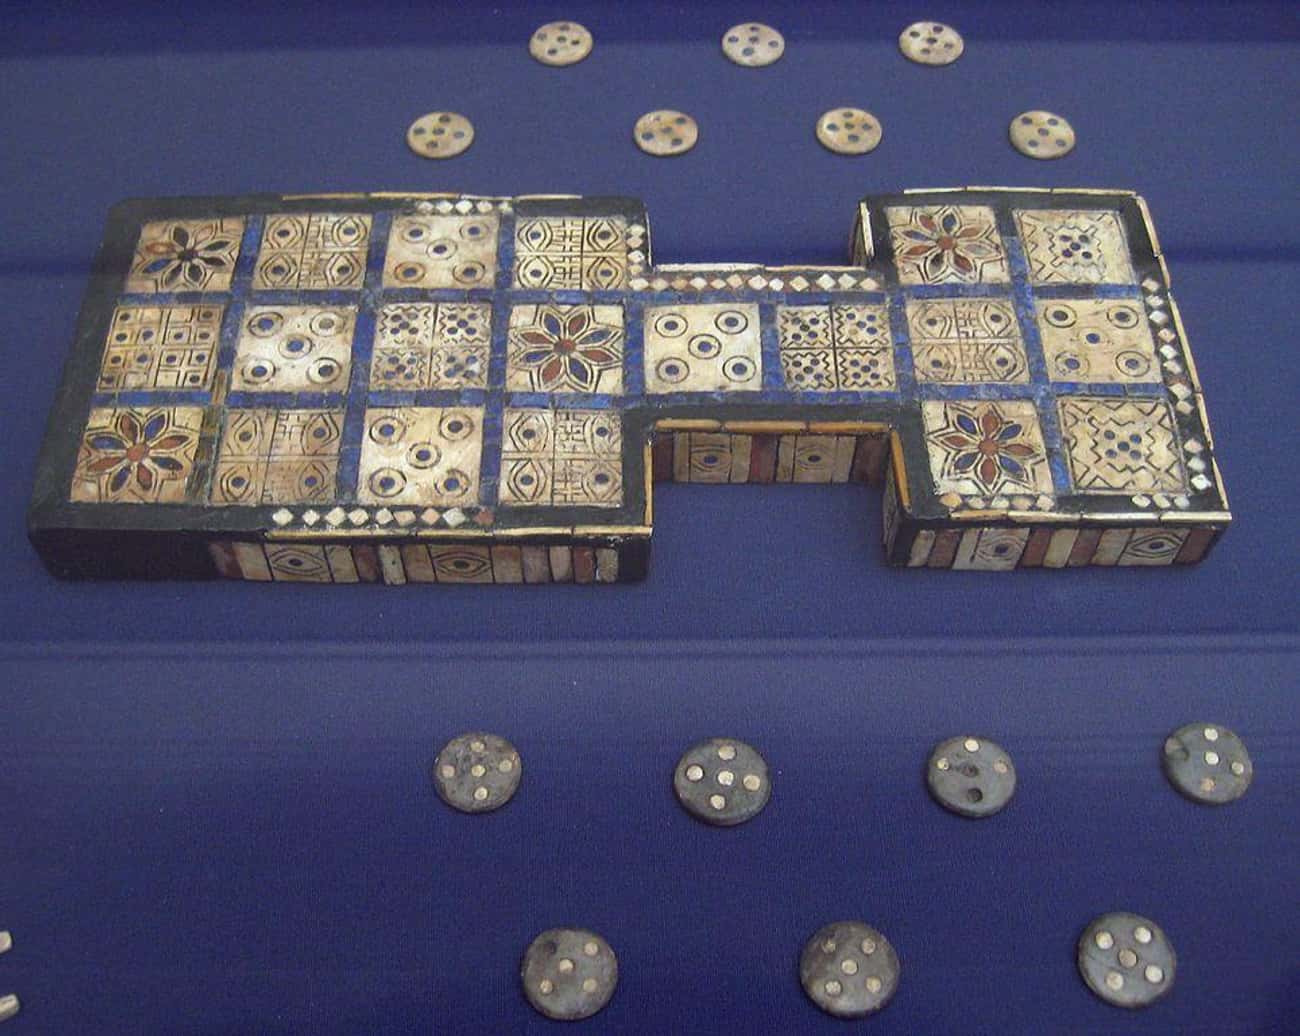 British Museum Royal Game of Ur (c. 2600-2400 BC)